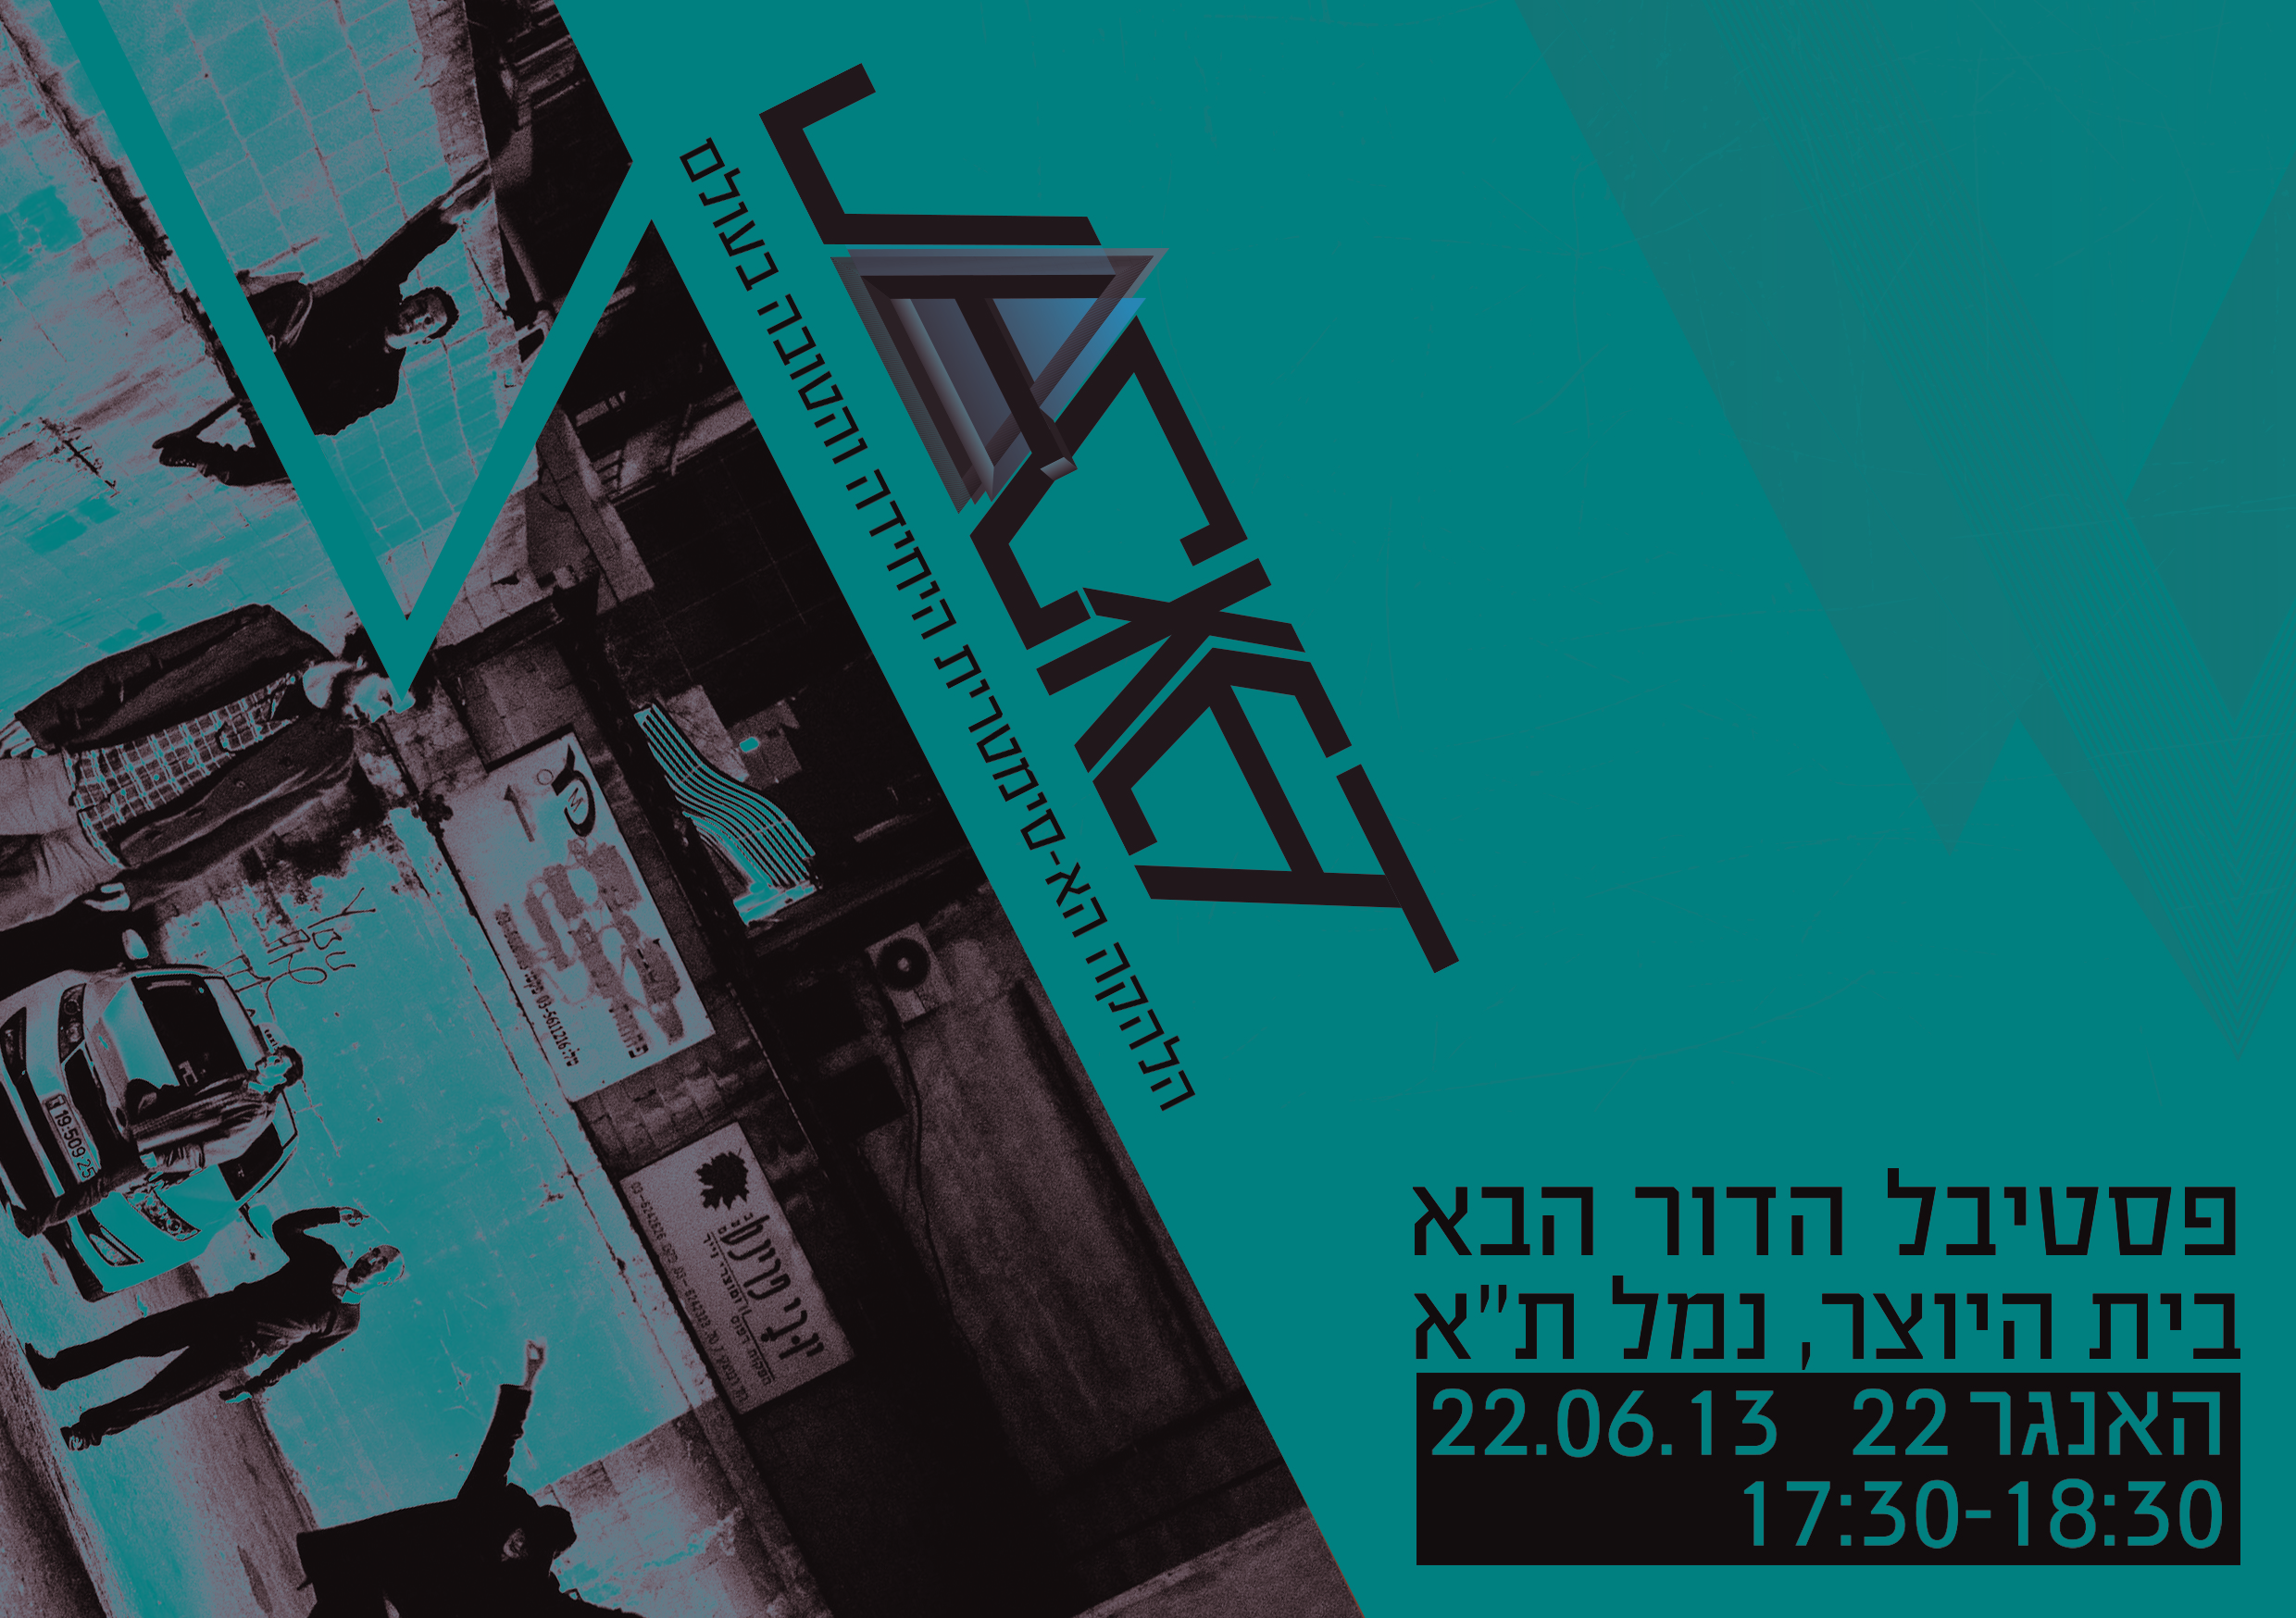 פסטיבל הדור הבא - להקת Jacket- בשבת הזה! בנמל תל אביב ב17:30 לא לפספס